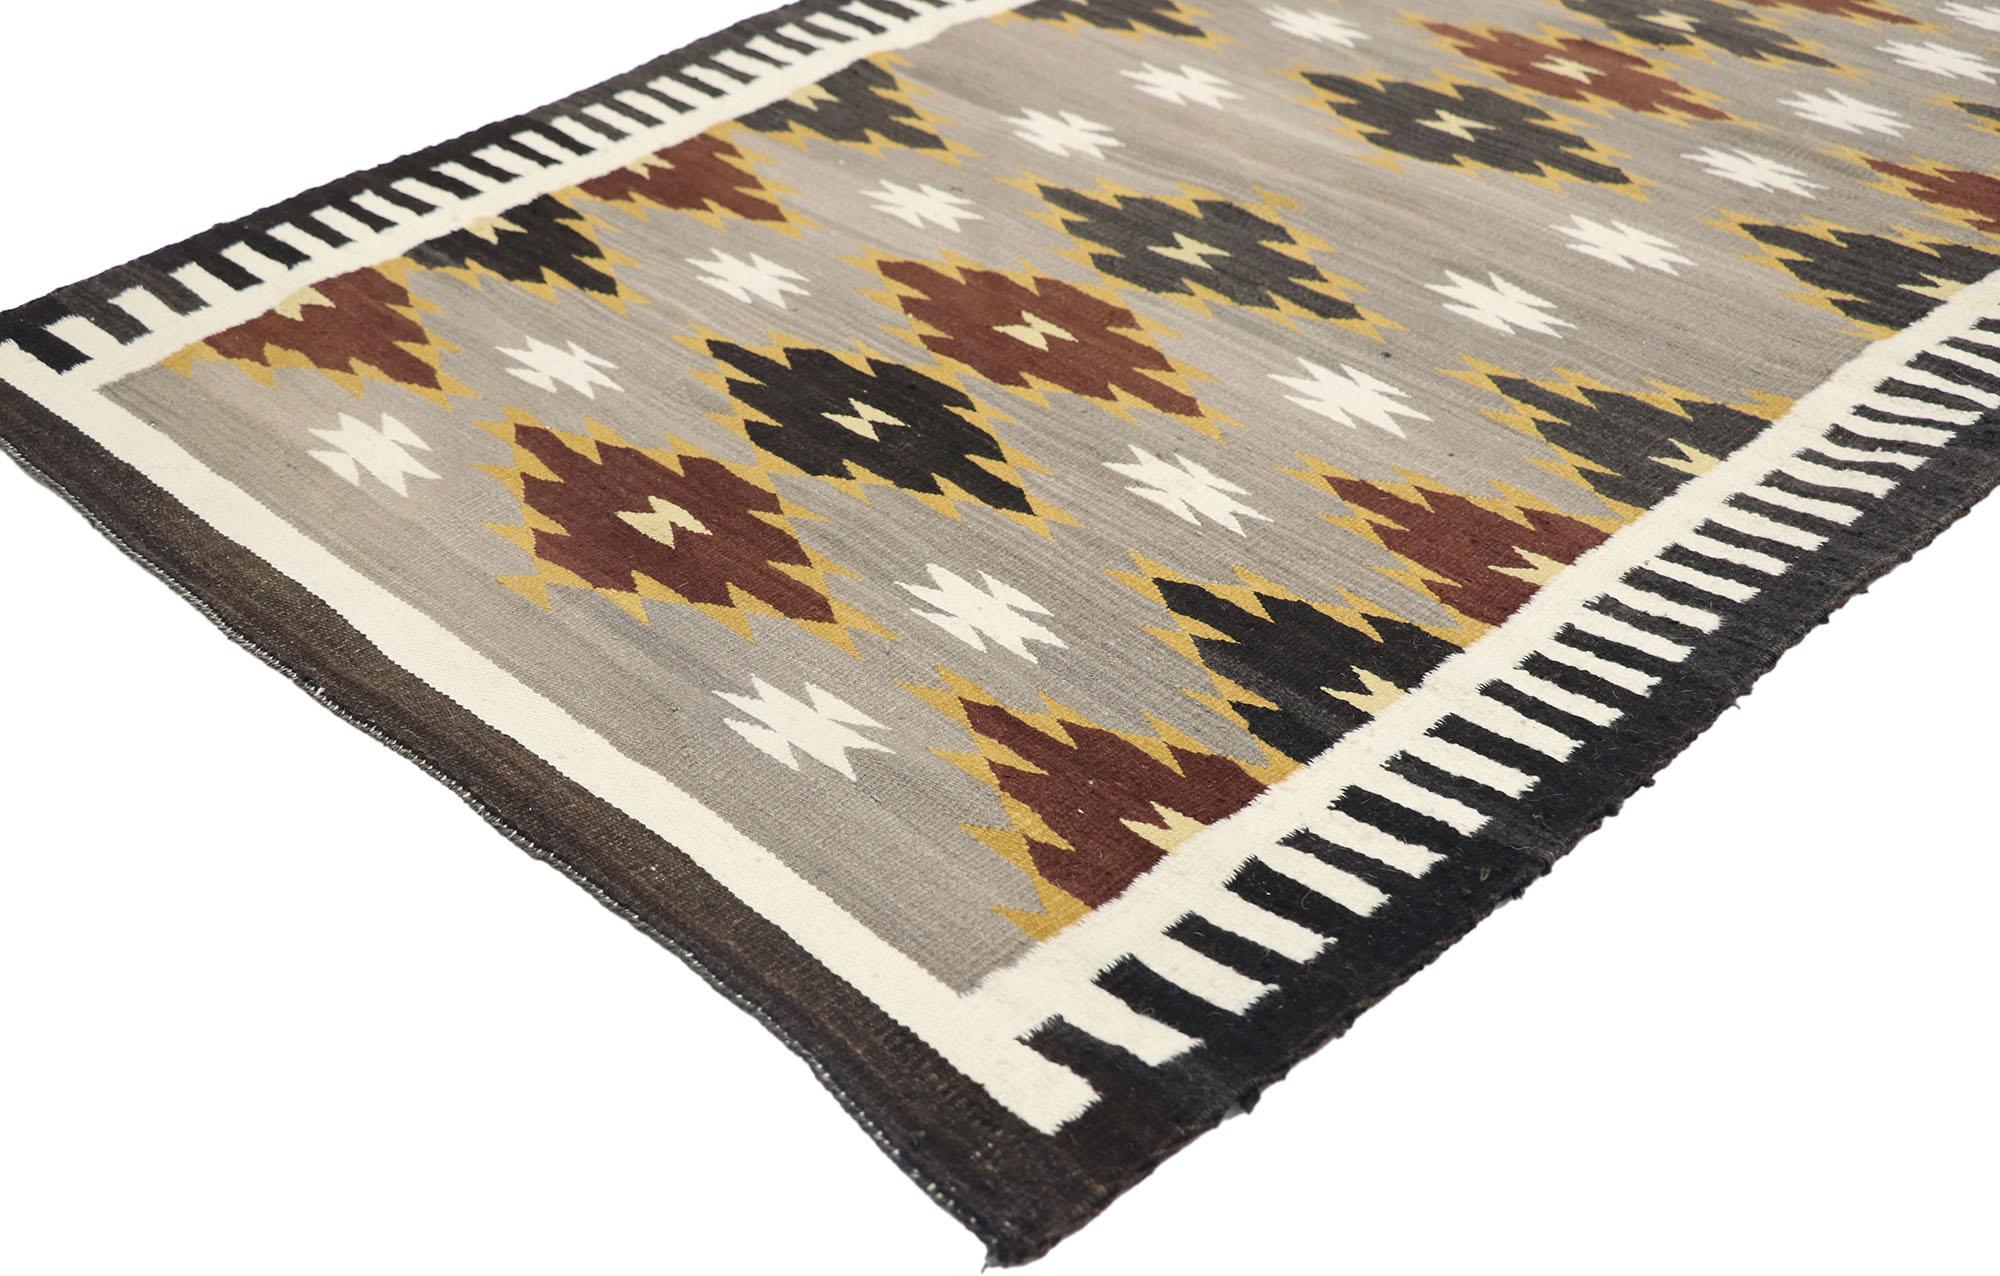 77869, tapis Kilim Navajo vintage de style Two Grey Hills. Avec son design expressif et audacieux, ses détails et sa texture incroyables, ce tapis Kilim Navajo vintage en laine tissé à la main est une vision captivante de la beauté tissée qui met en